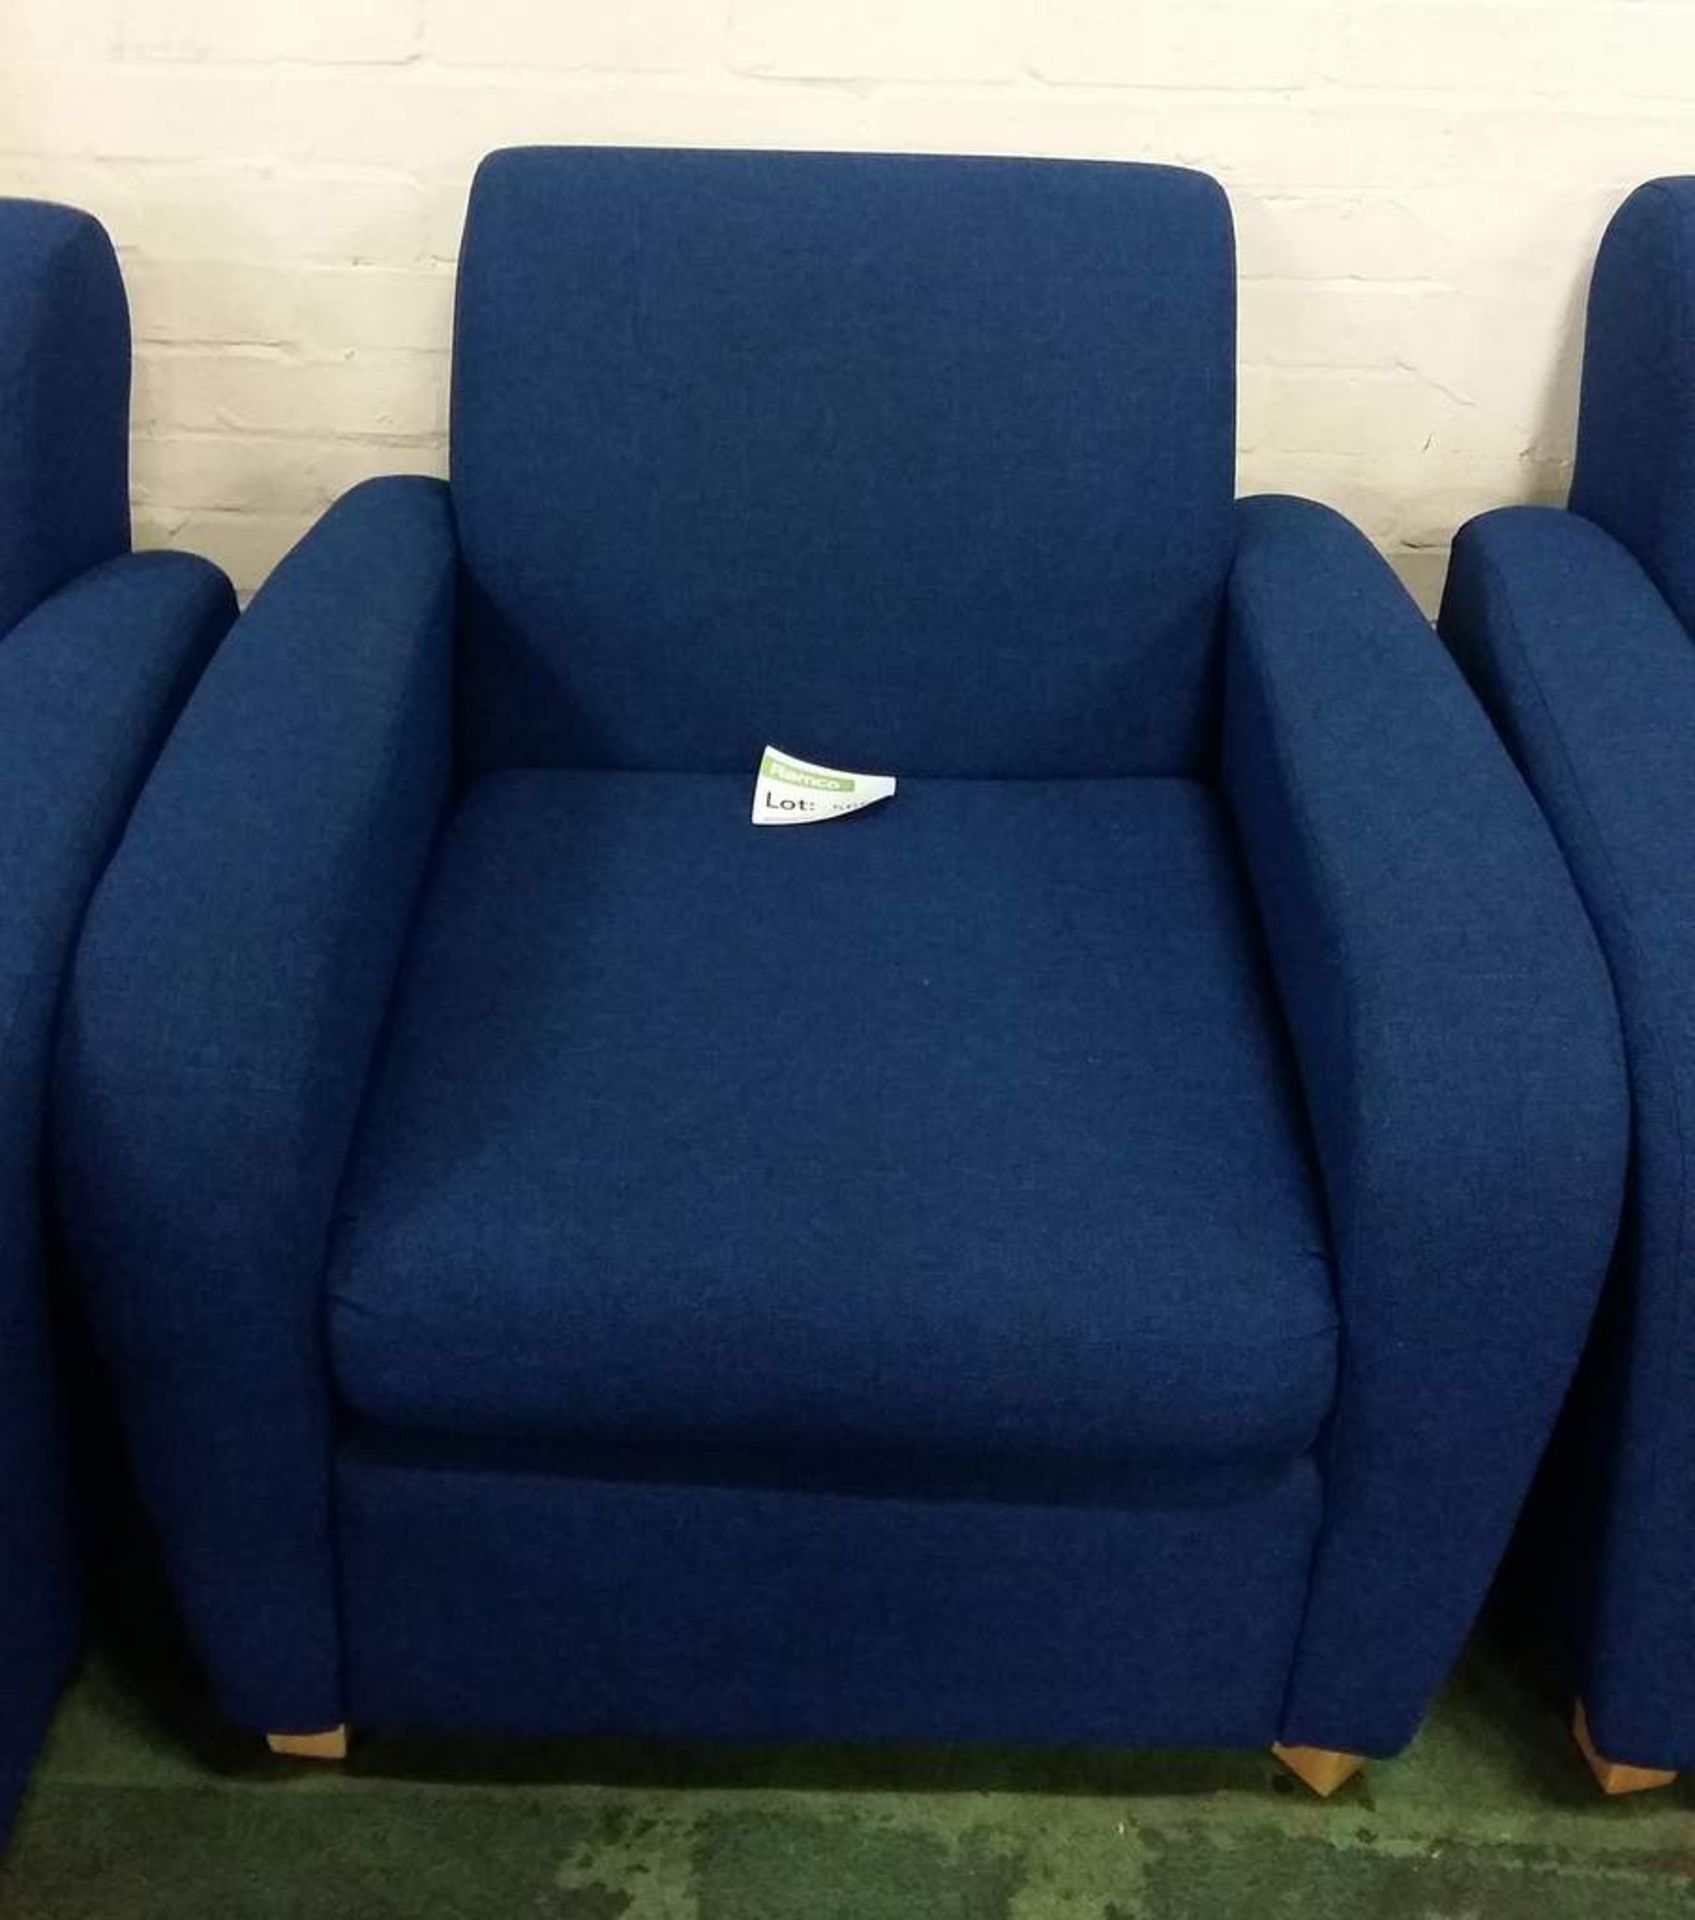 Plain blue fabric armchair